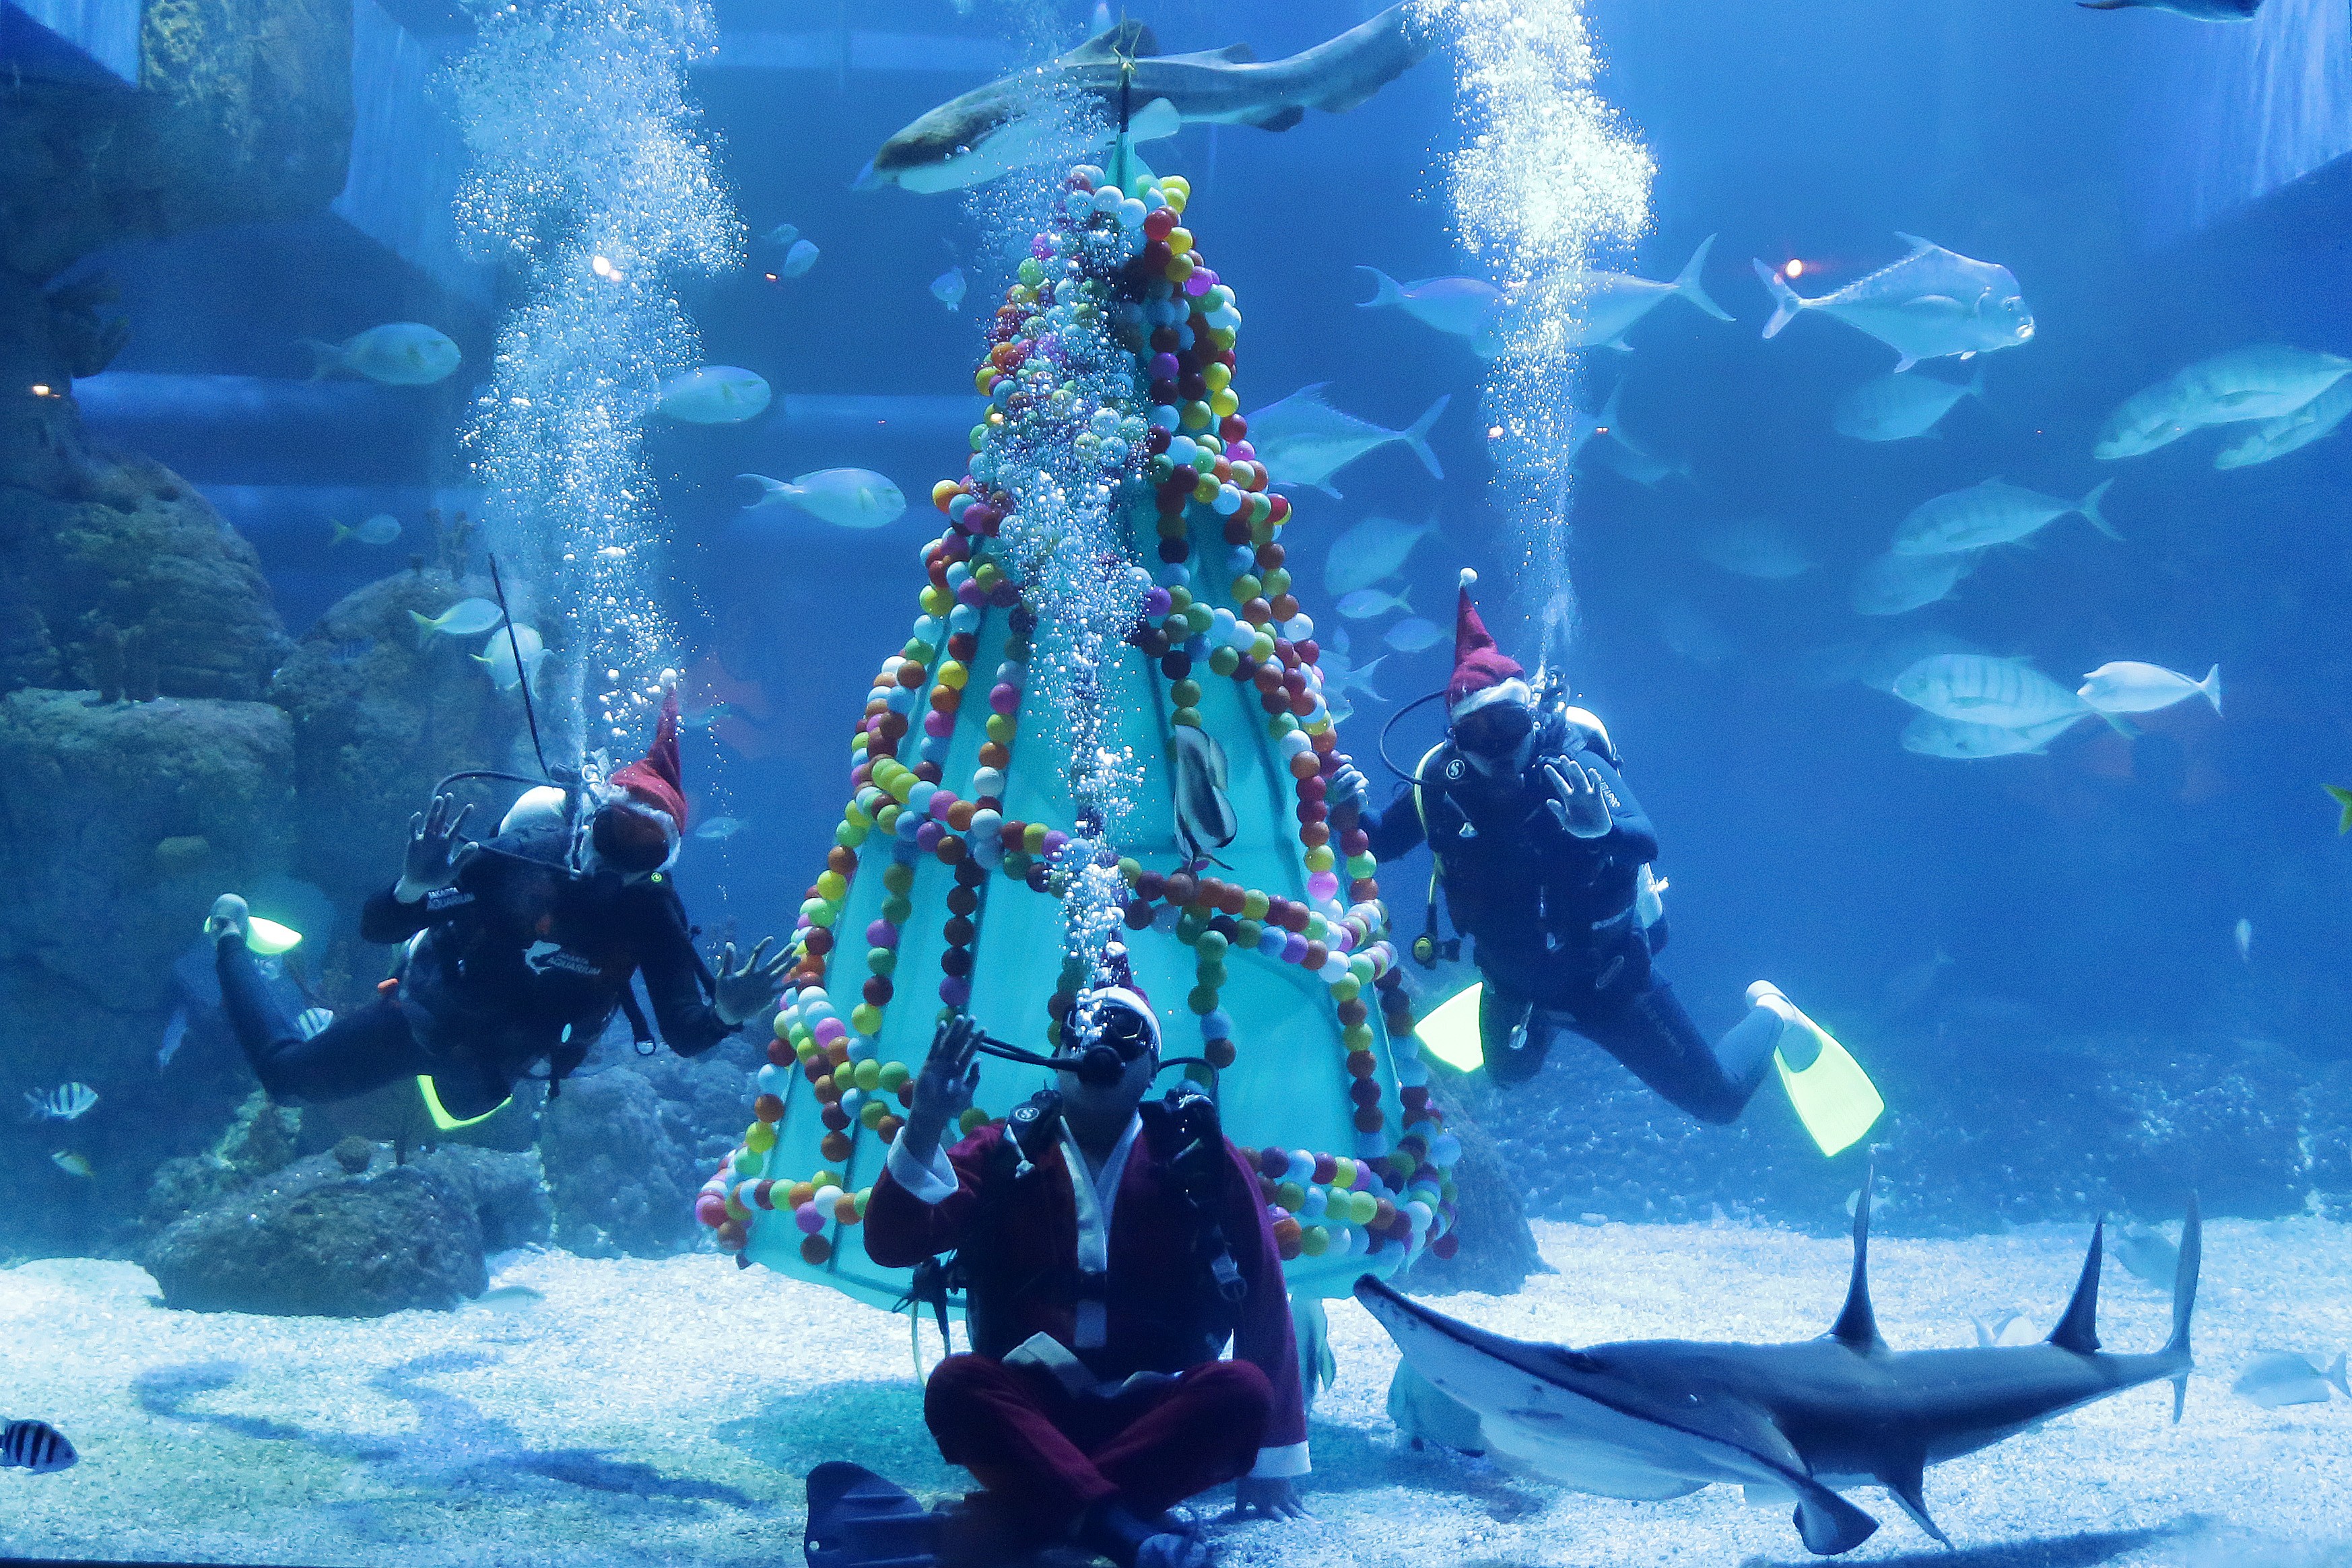 Endonezya’nın başkentinde yer alan Jakarta Aquarium’da Noel Baba kostümü giyen dalgıçlar, Noel ağaçları ile dekor edilen havuzlarda gösteri düzenledi.